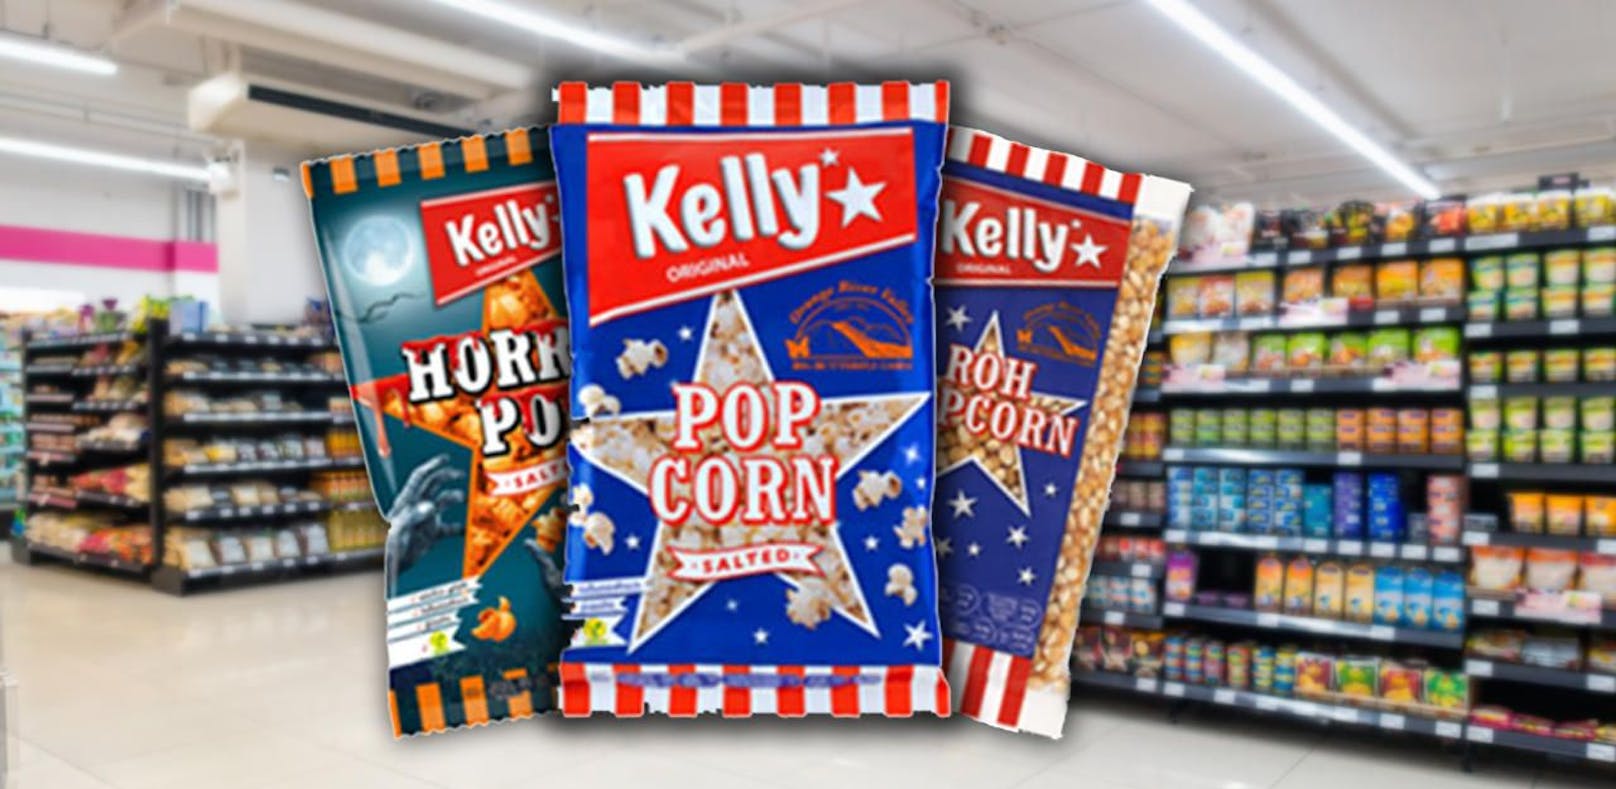 Kelly ruft Popcorn-Produkte zurück